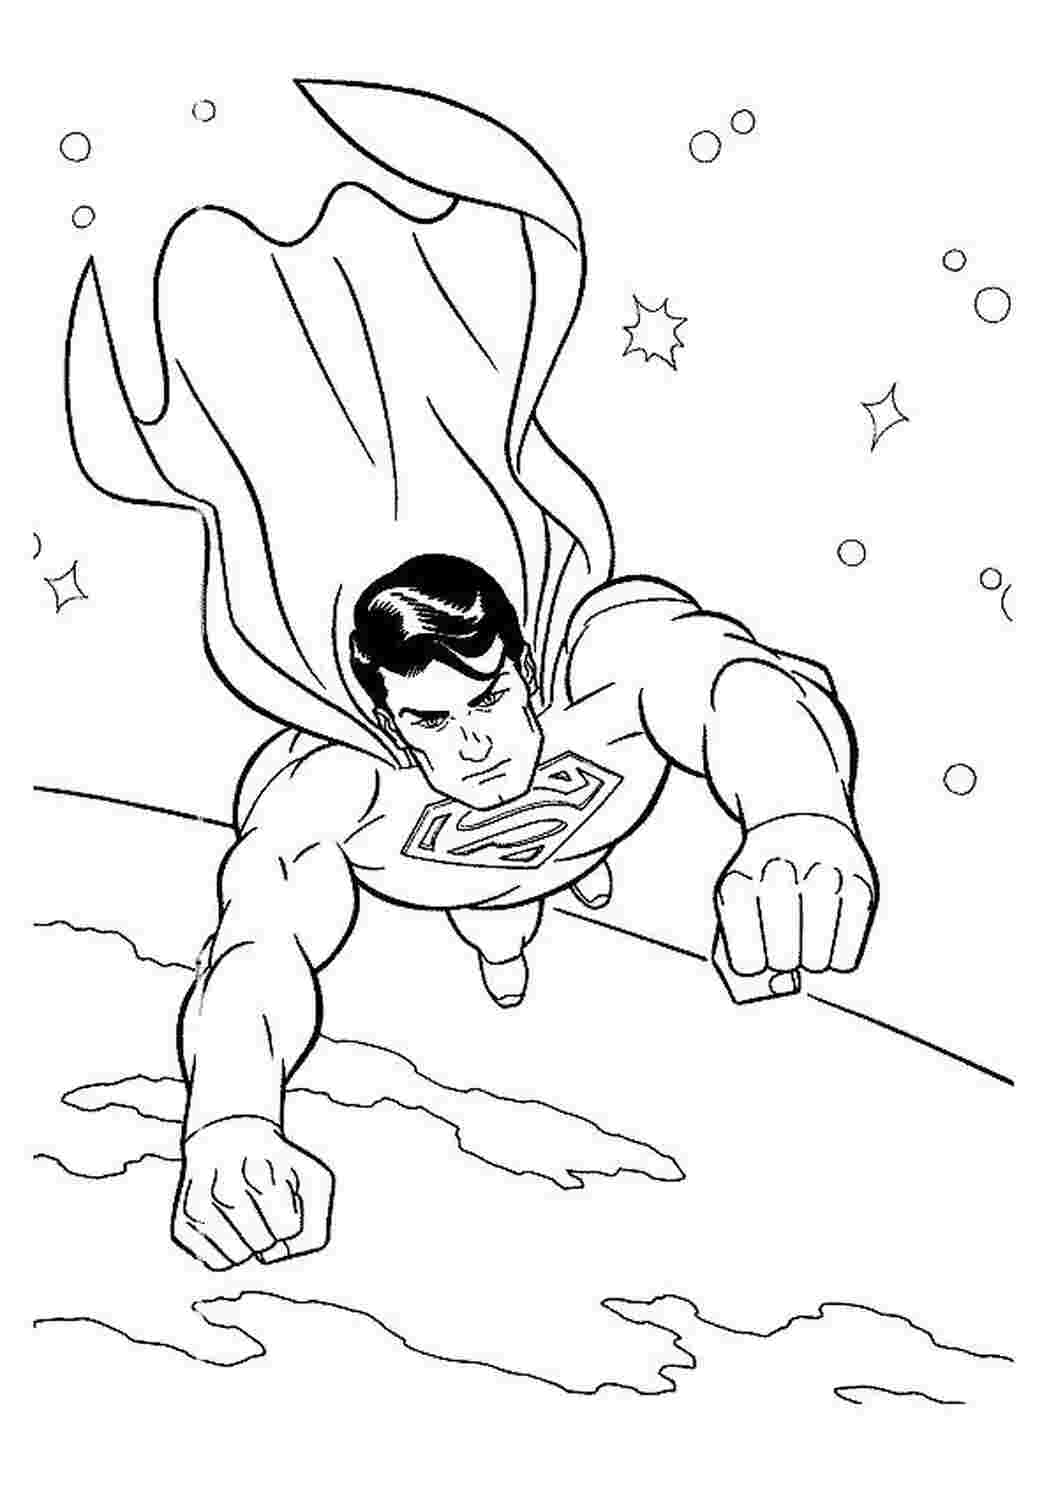 Раскраски картинки на рабочий стол онлайн Супергерои, супермен летит вокруг планеты Распечатать раскраски для мальчиков